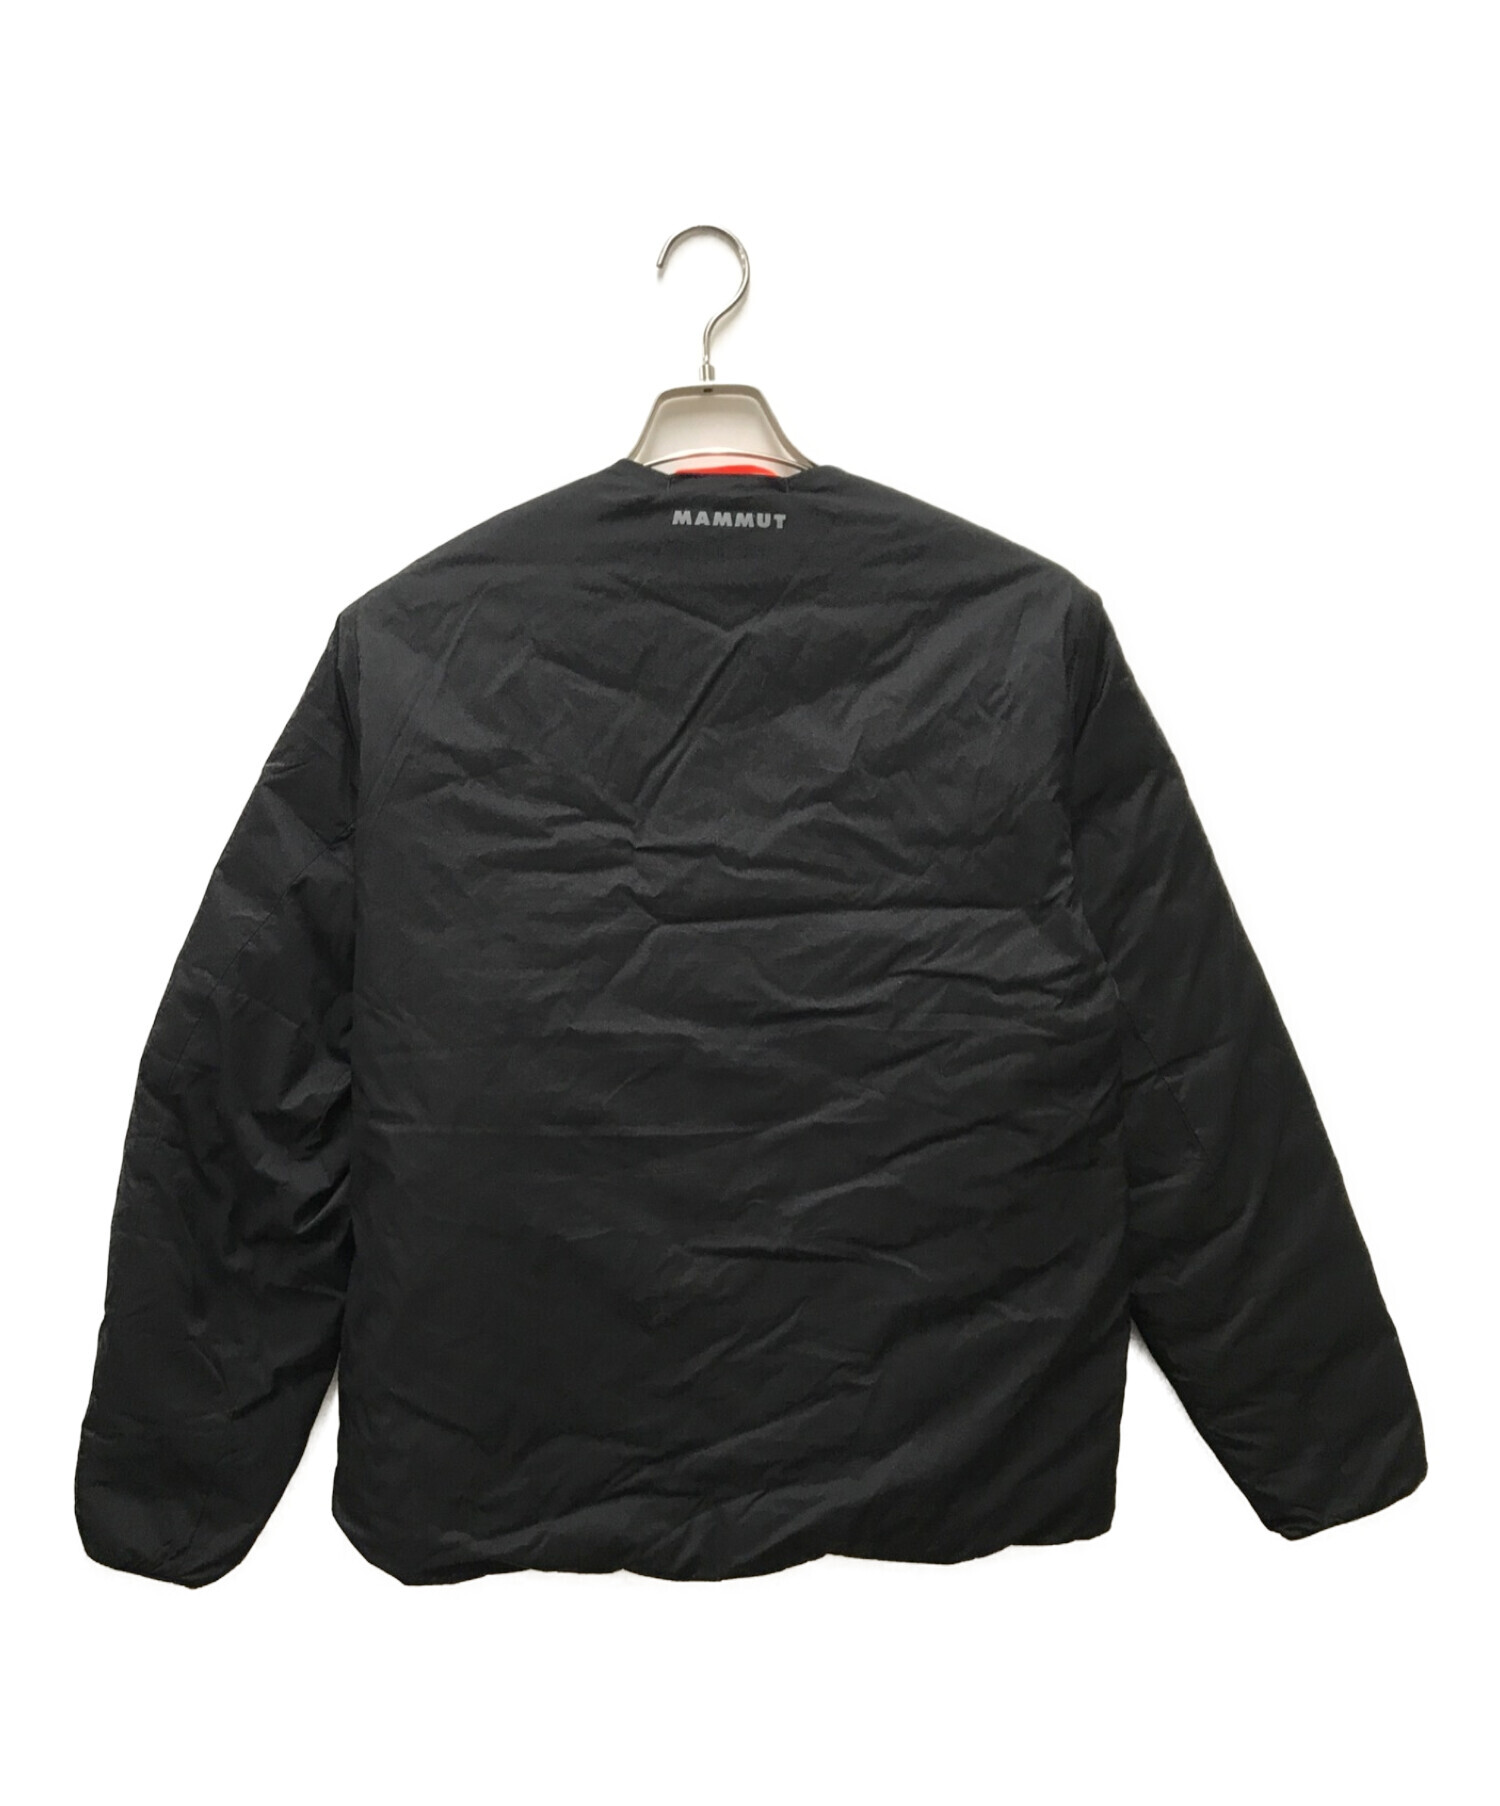 MAMMUT (マムート) リバーシブルダウンジャケット ブラック サイズ:M